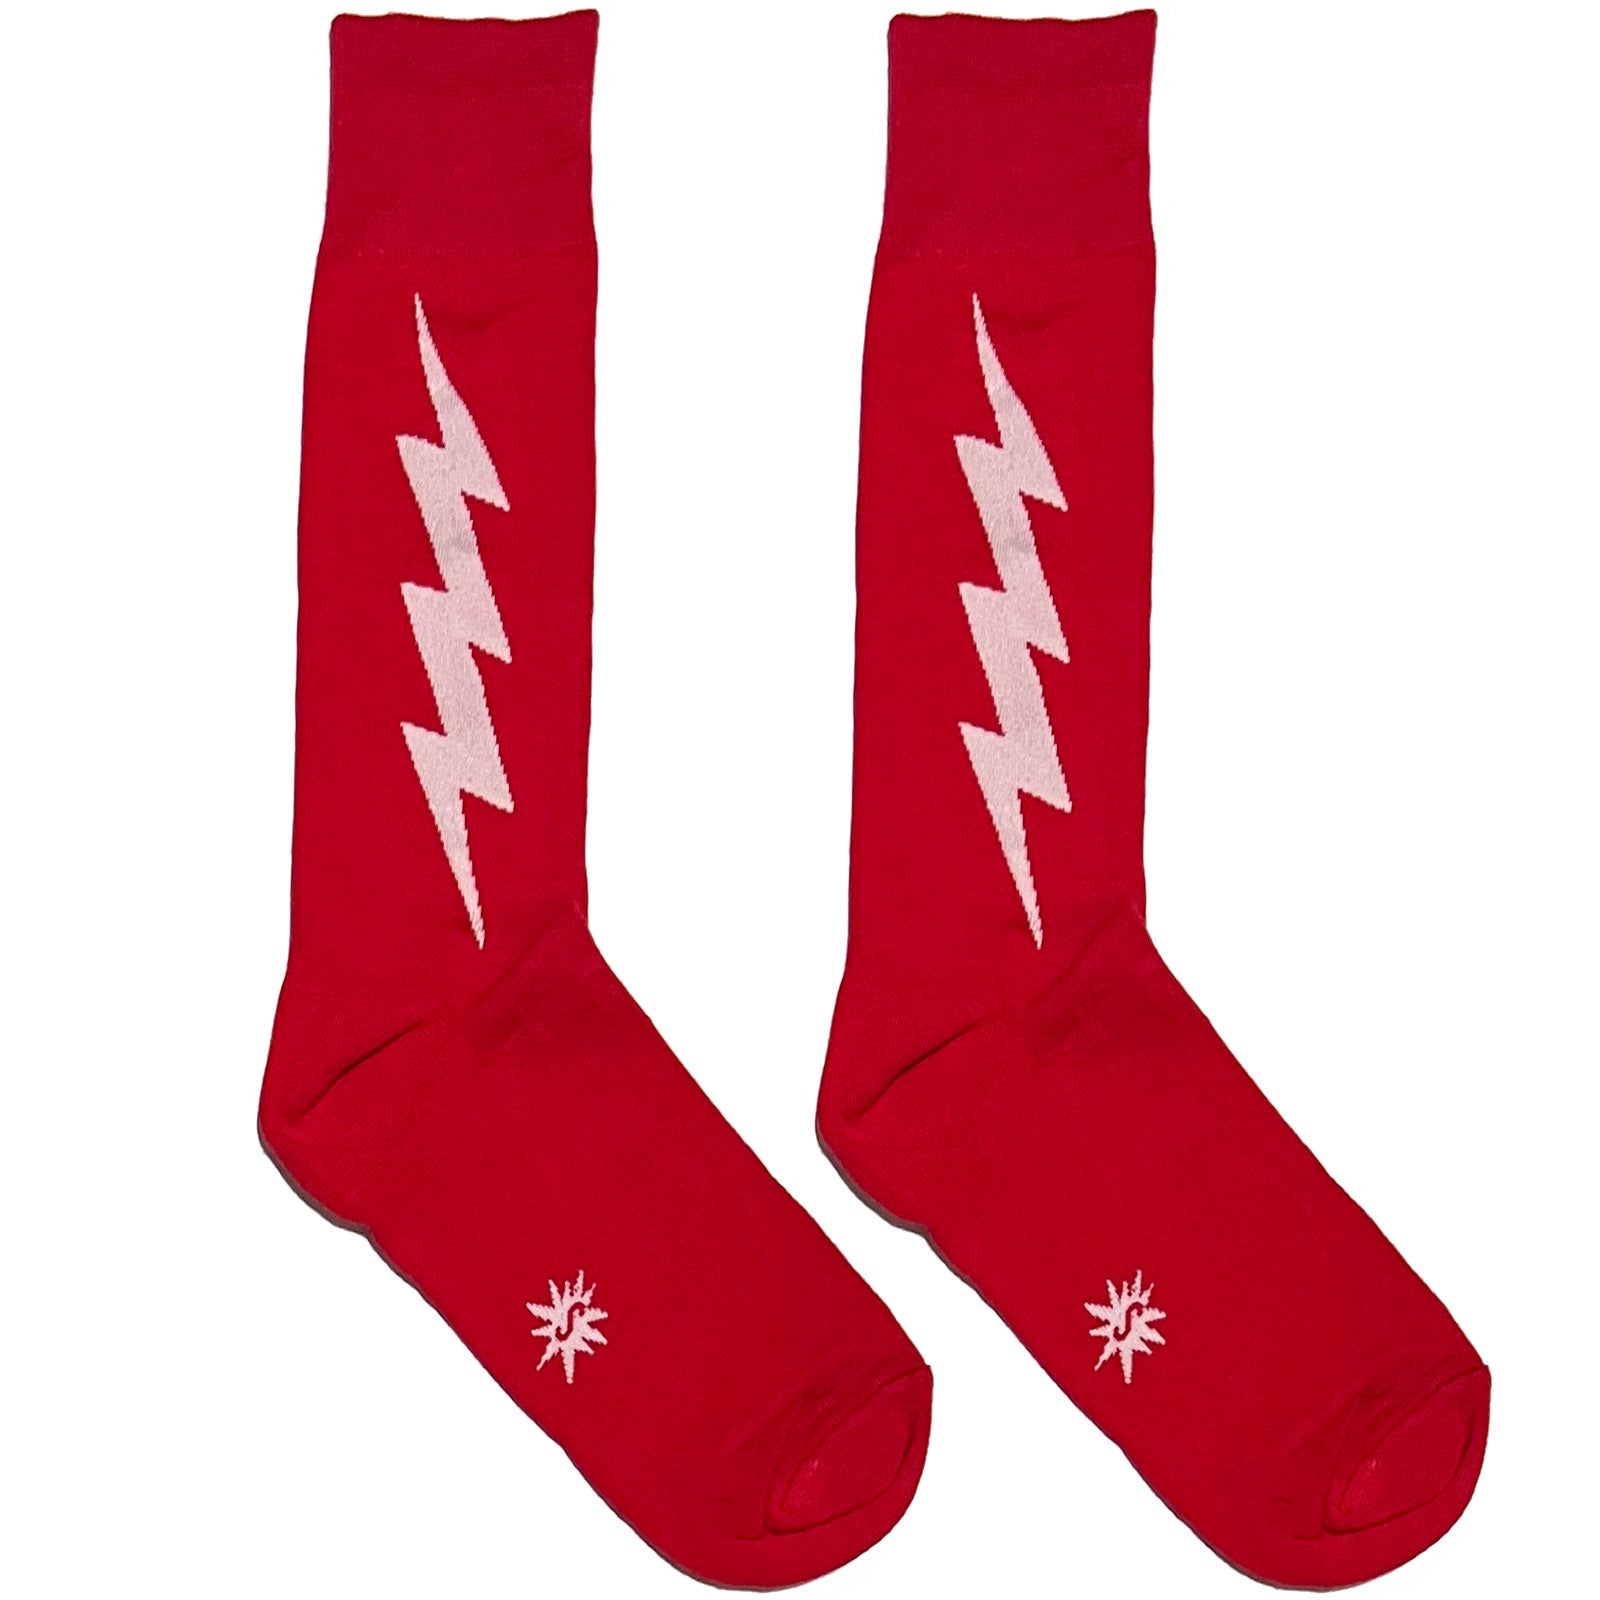 Red And White Lightning Socks